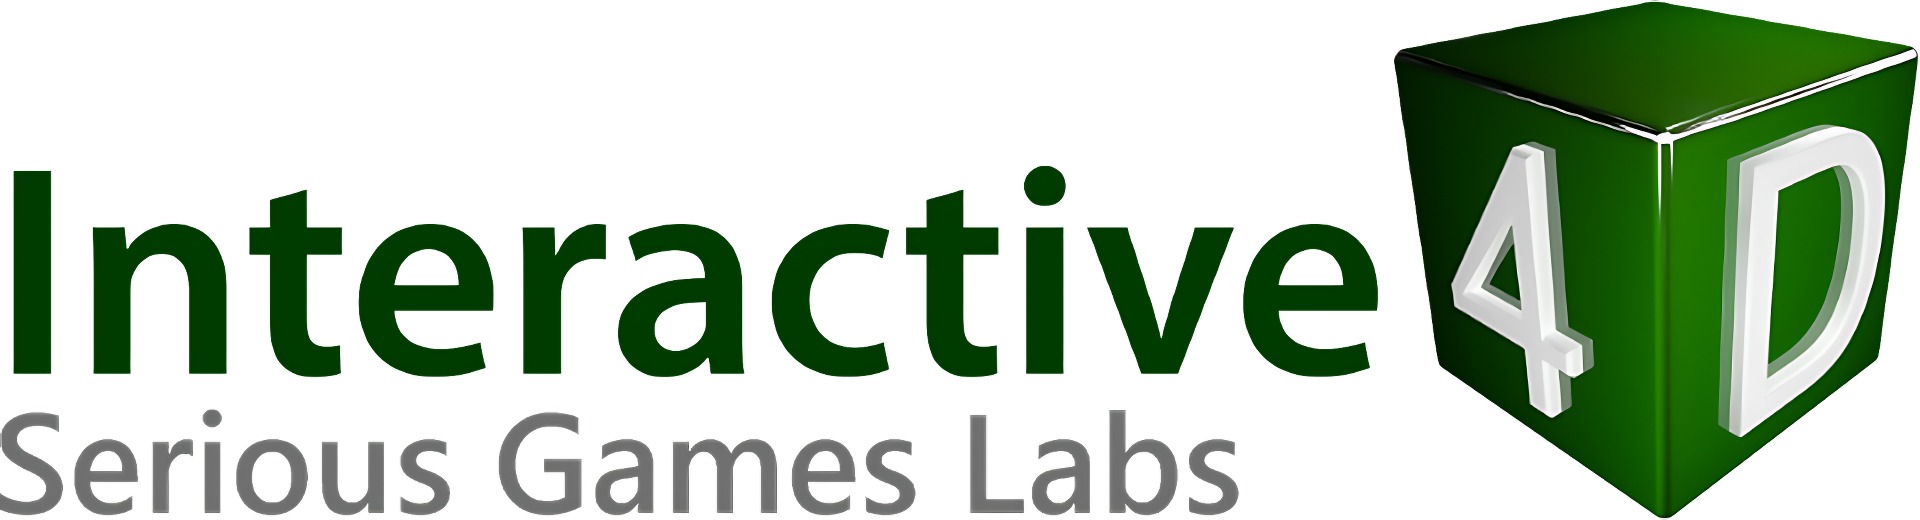 Interactive 4D logo